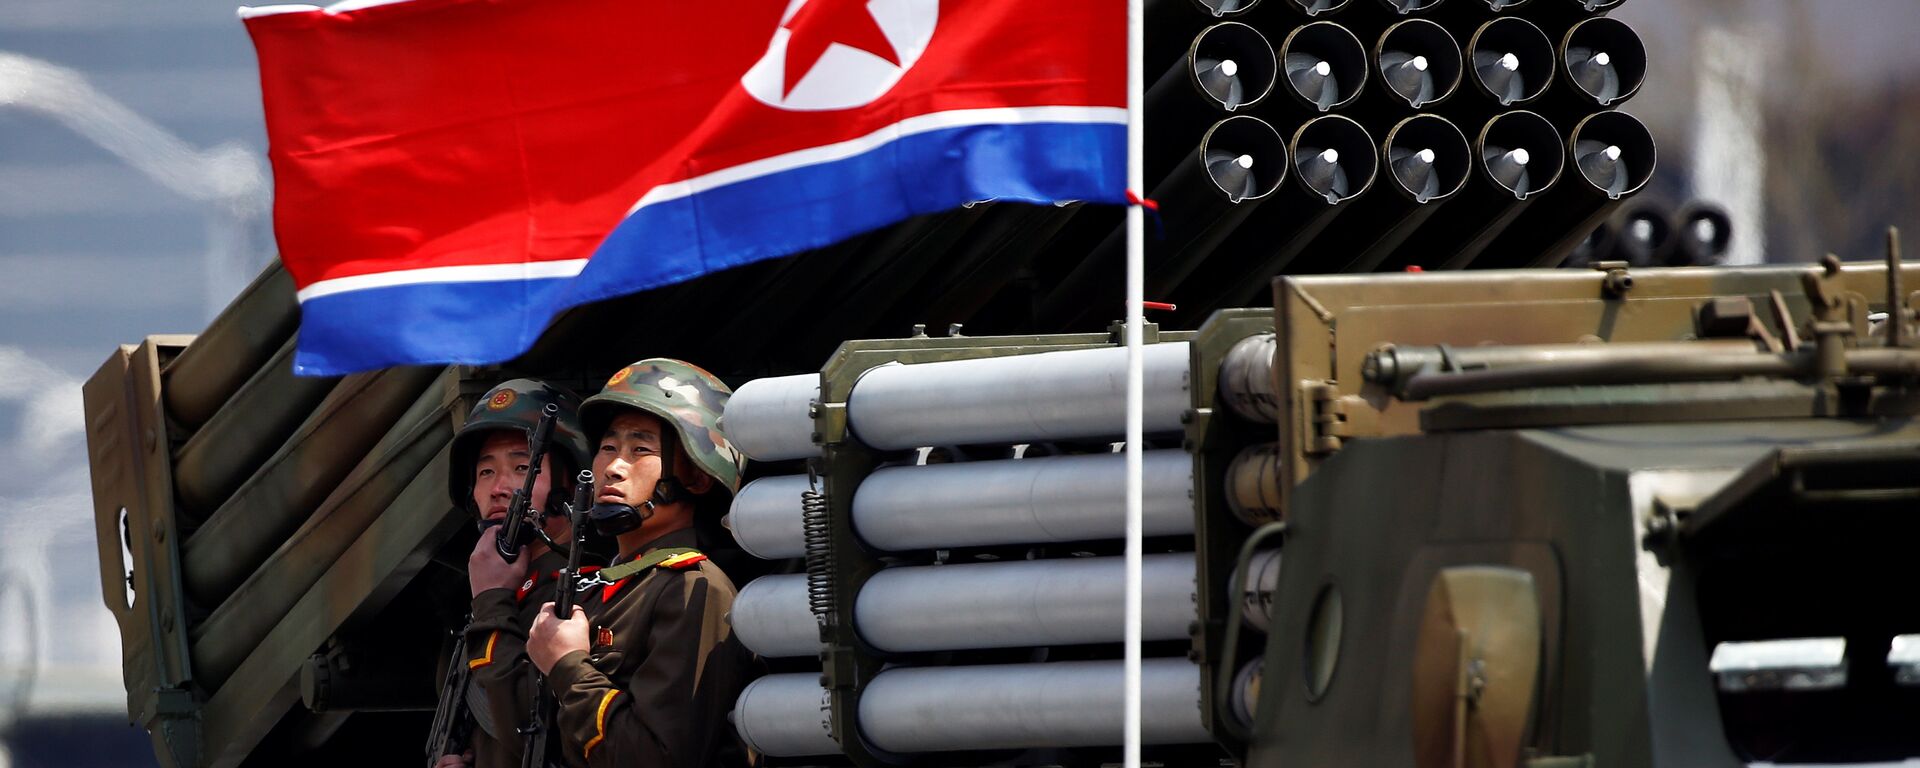 Desfile militar dedicado al 105 aniversario del nacimiento del fundador del Estado norcoreano, Kim Il Sung - Sputnik Mundo, 1920, 25.03.2021